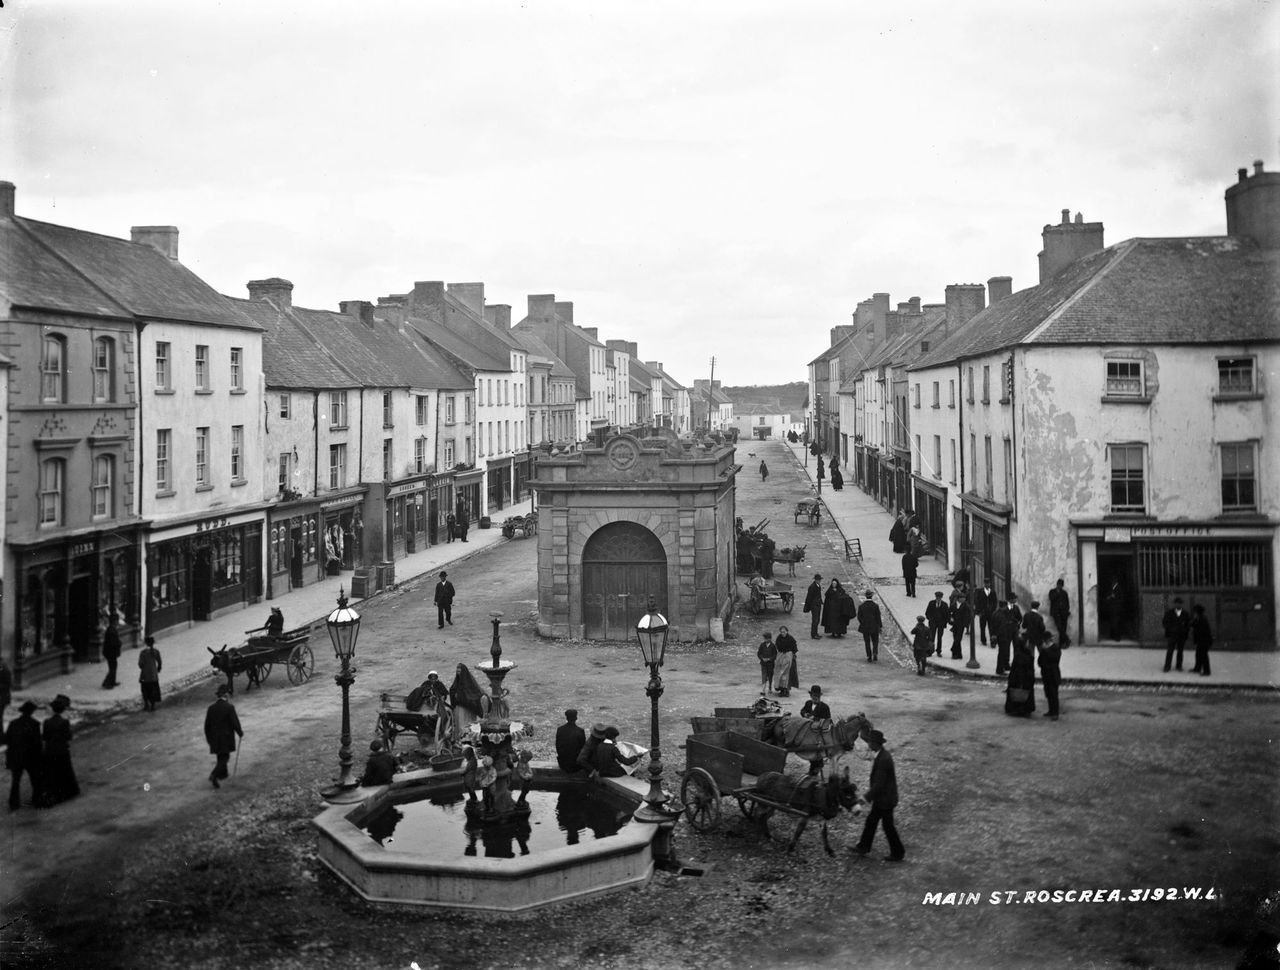 Main Street, Roscrea, Co. Tipperary
Ireland
c. 1865-1914